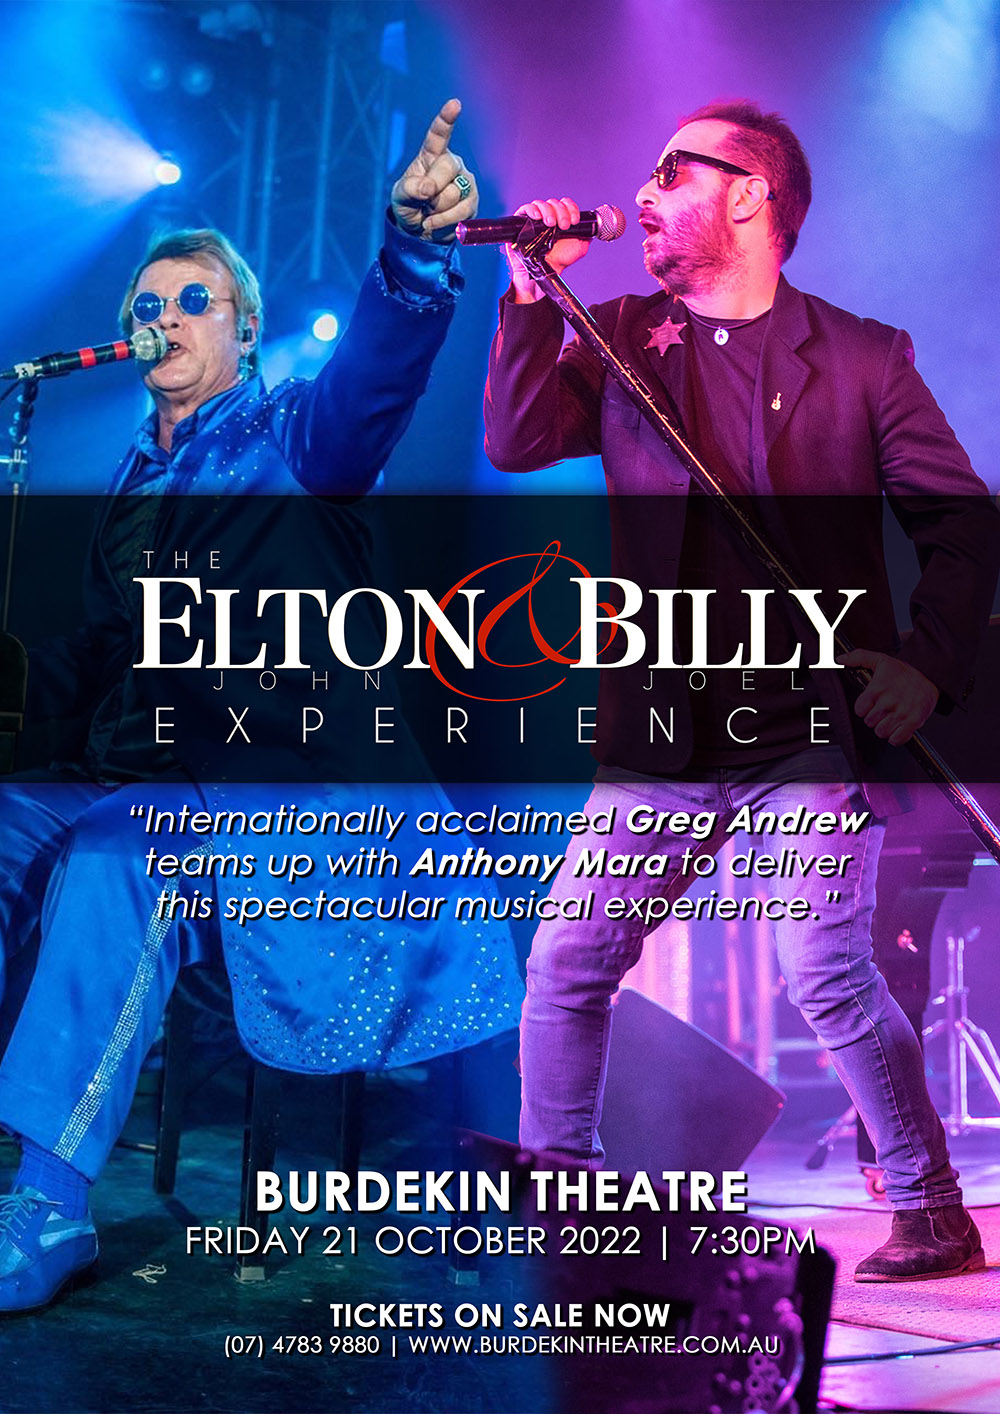 Elton John and Billy Joel Experience